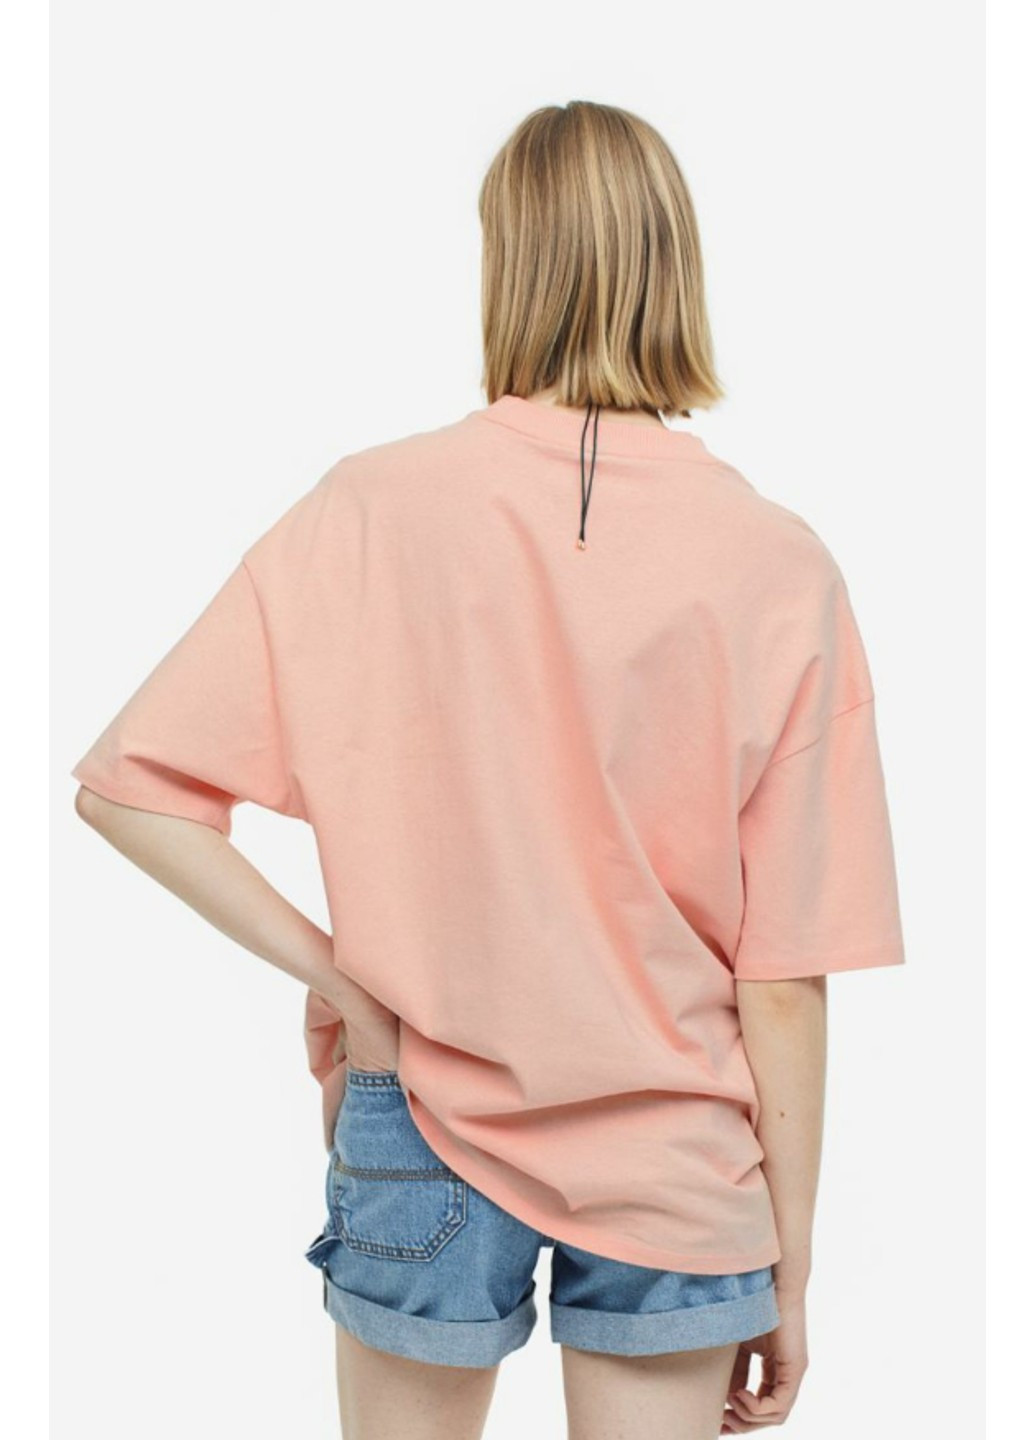 Розовая летняя женская футболка оверсайз н&м (55970) xs розовая H&M